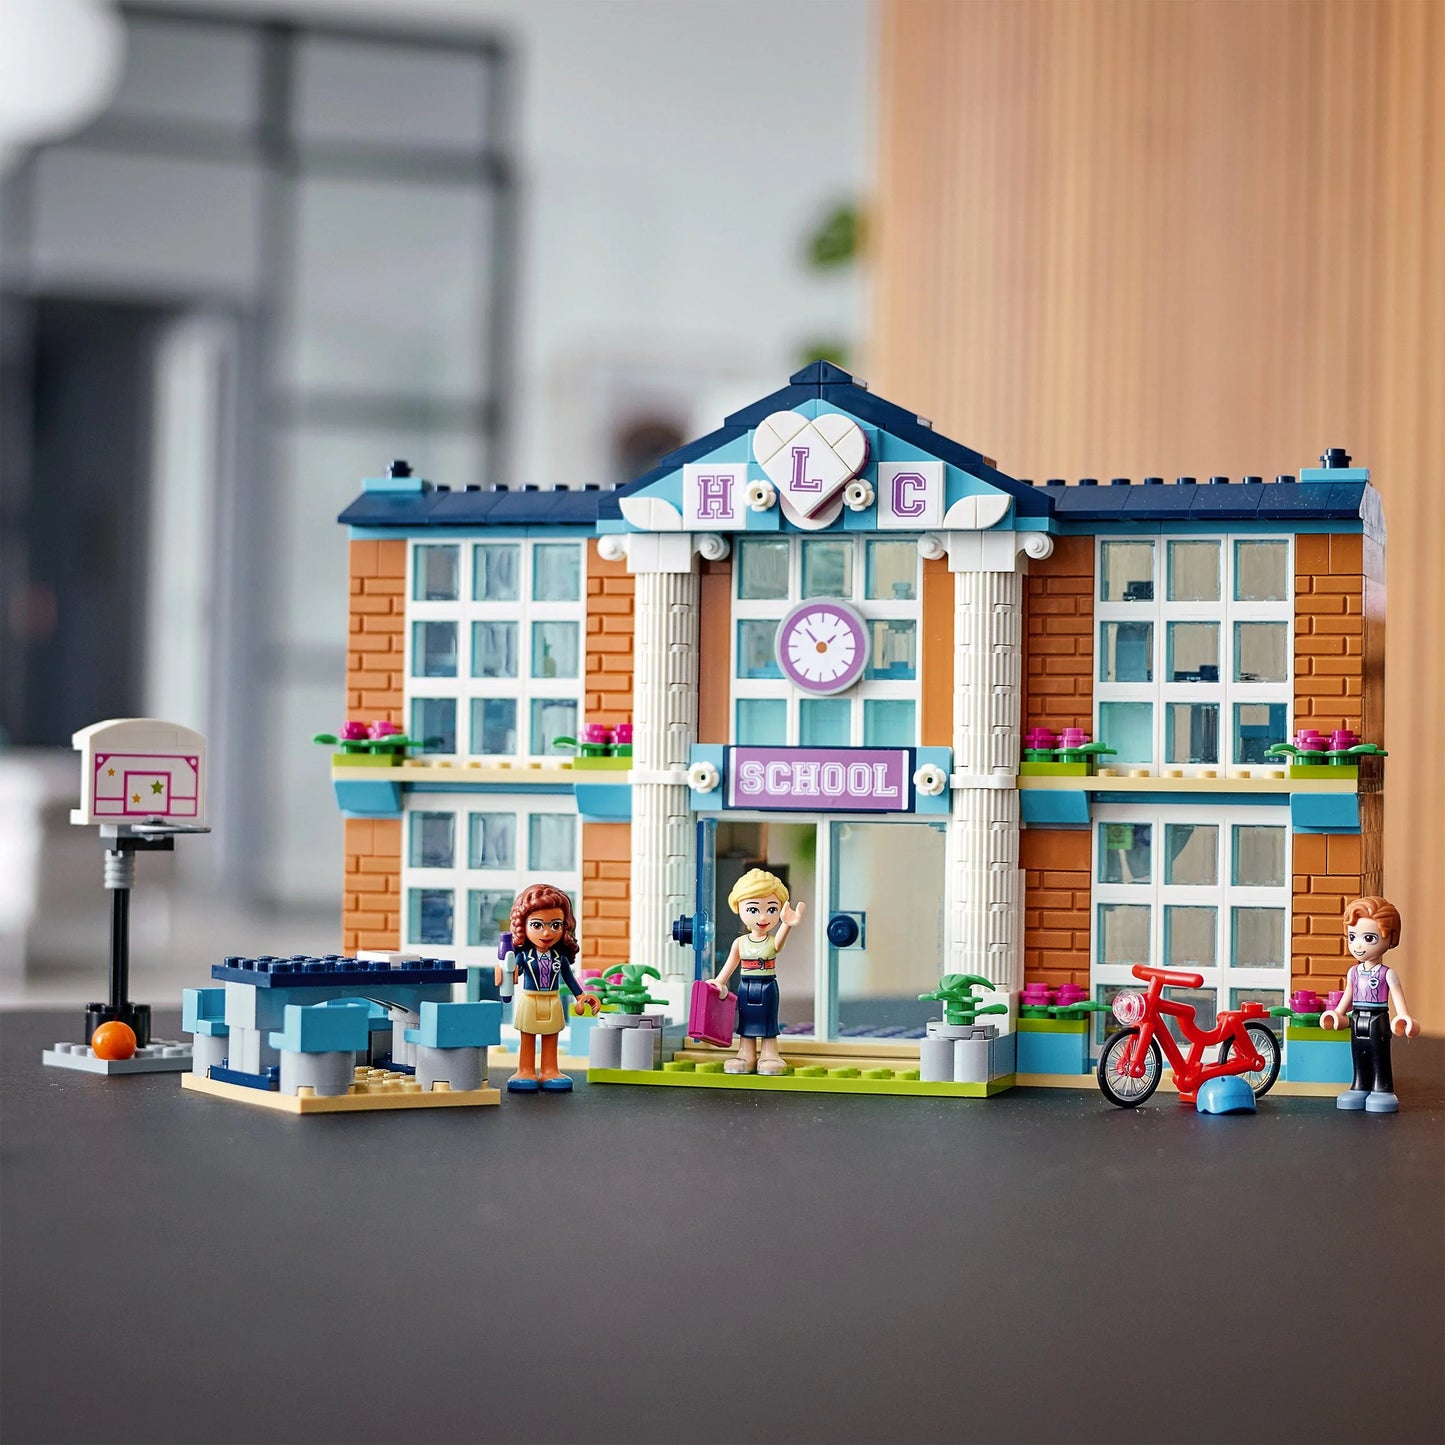 Heartlake City school-LEGO Friends